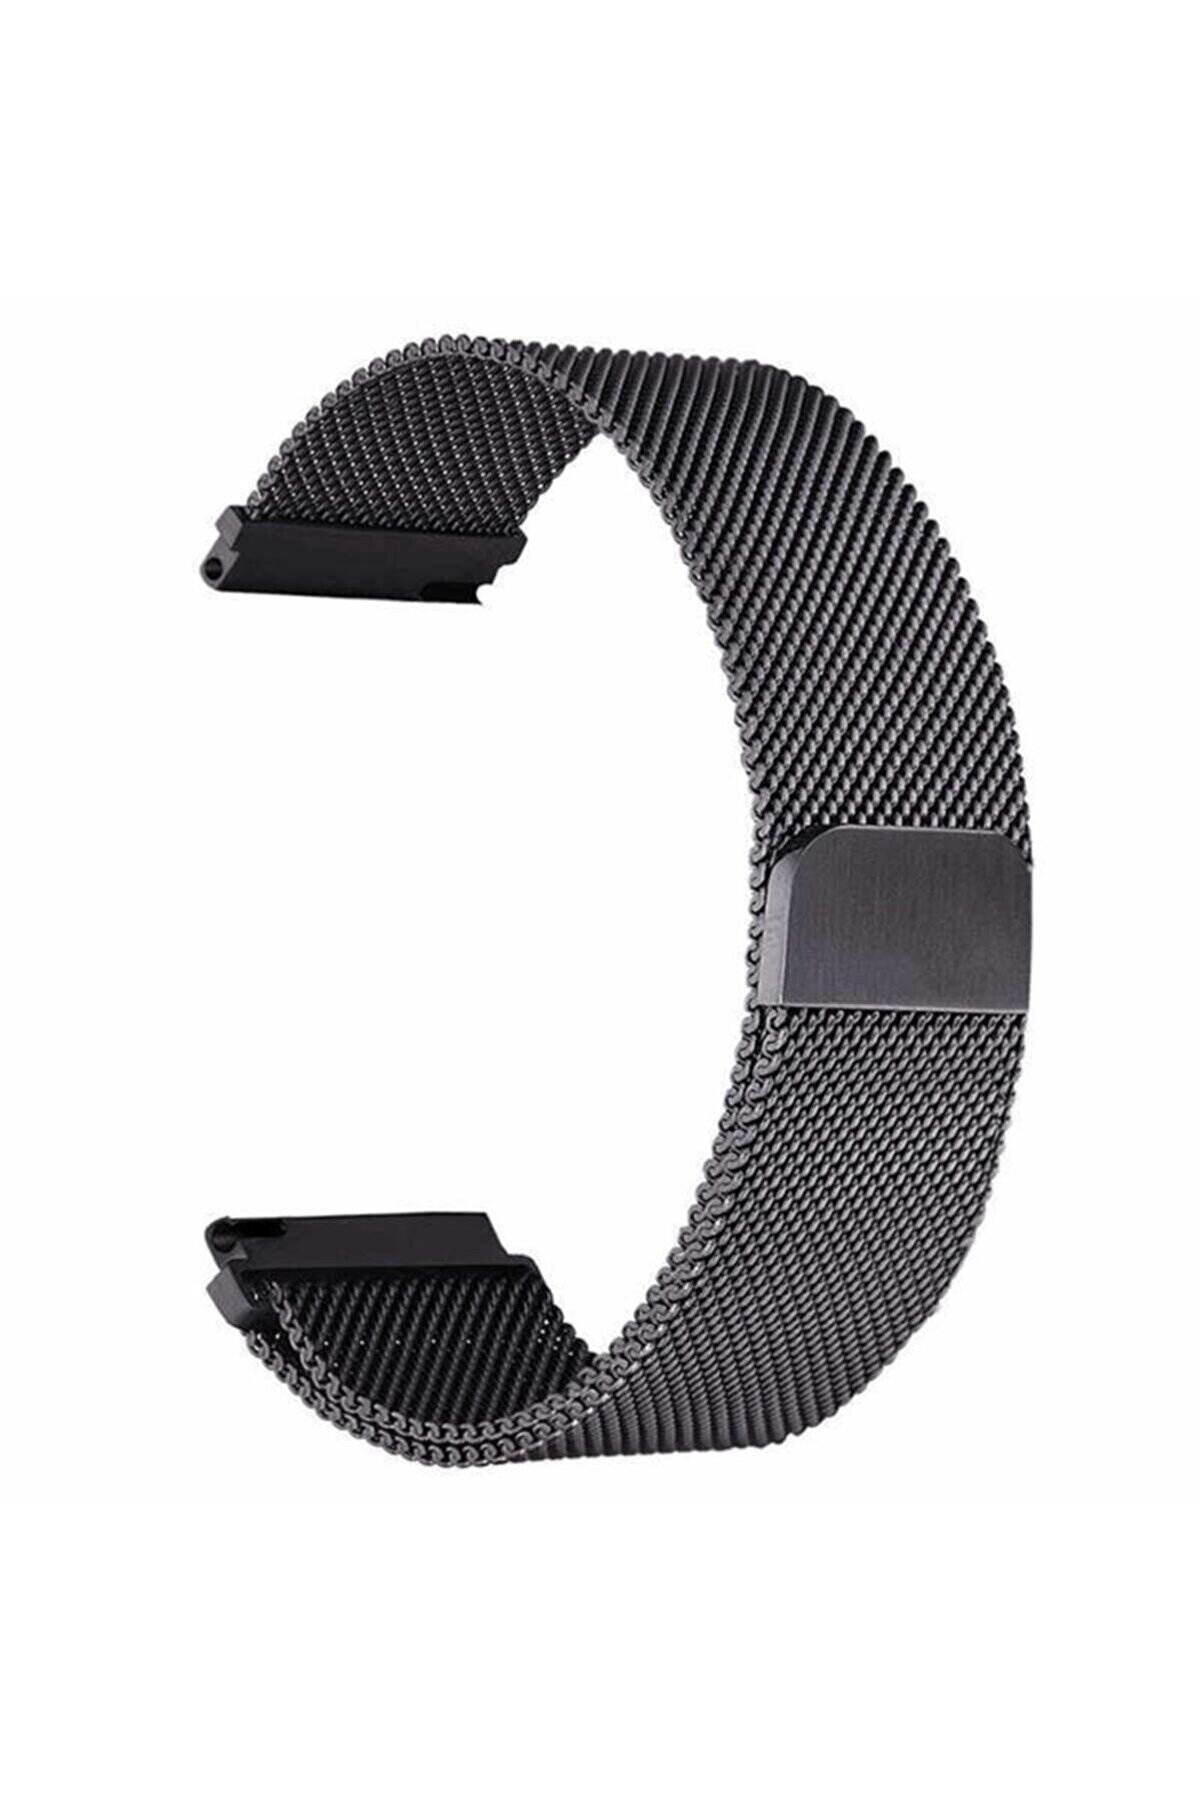 Fibaks Samsung Galaxy Watch Gear S3 (22MM) Krd-12 Akıllı Saat Kordonu Metal Örgü Hasır Kordon Kayış